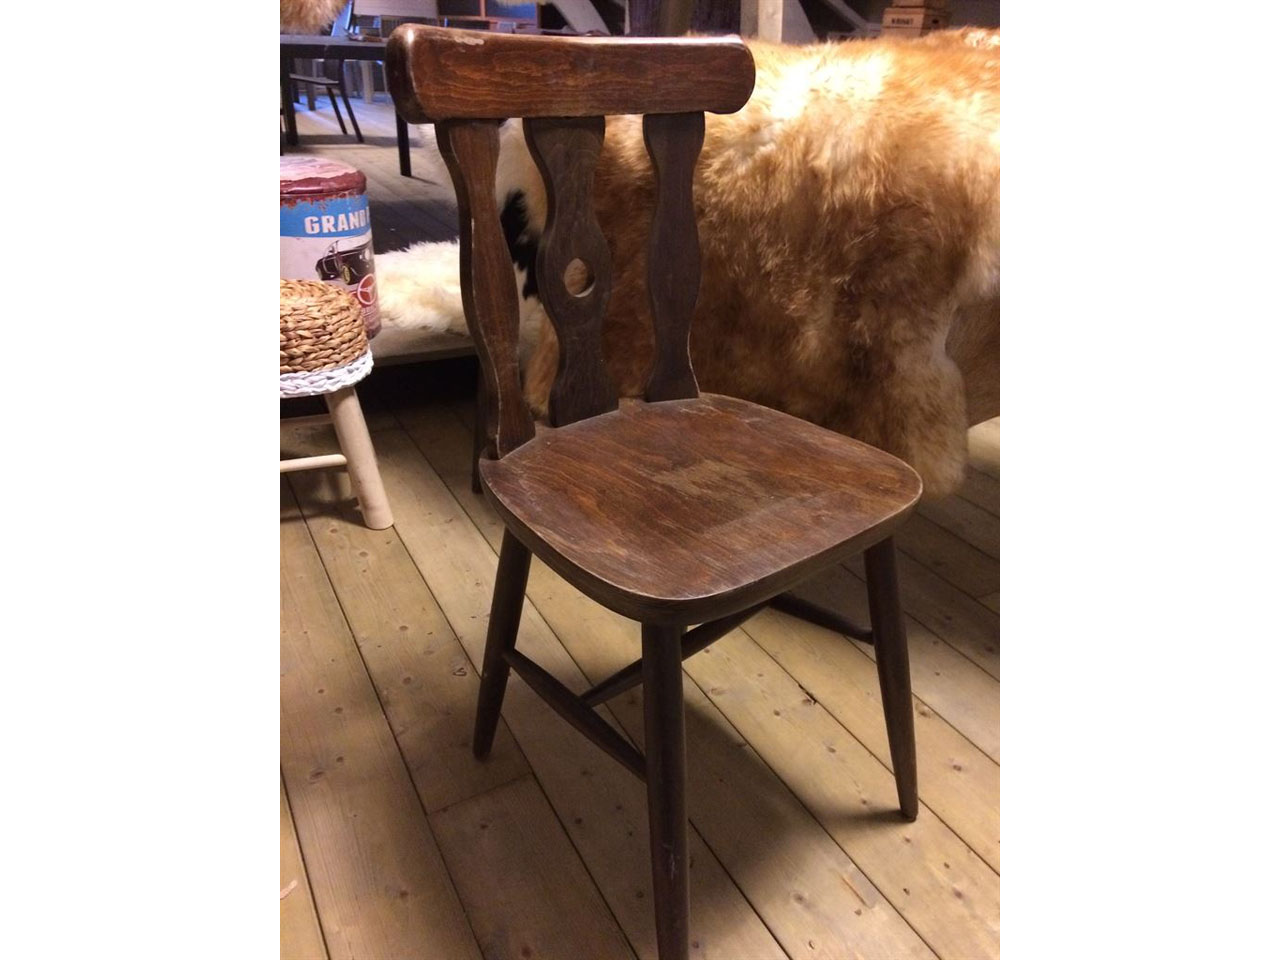 Ontvangst Anoi thuis Handelsonderneming Bullinga - Skulls & Deco > Antieke houten stoelen